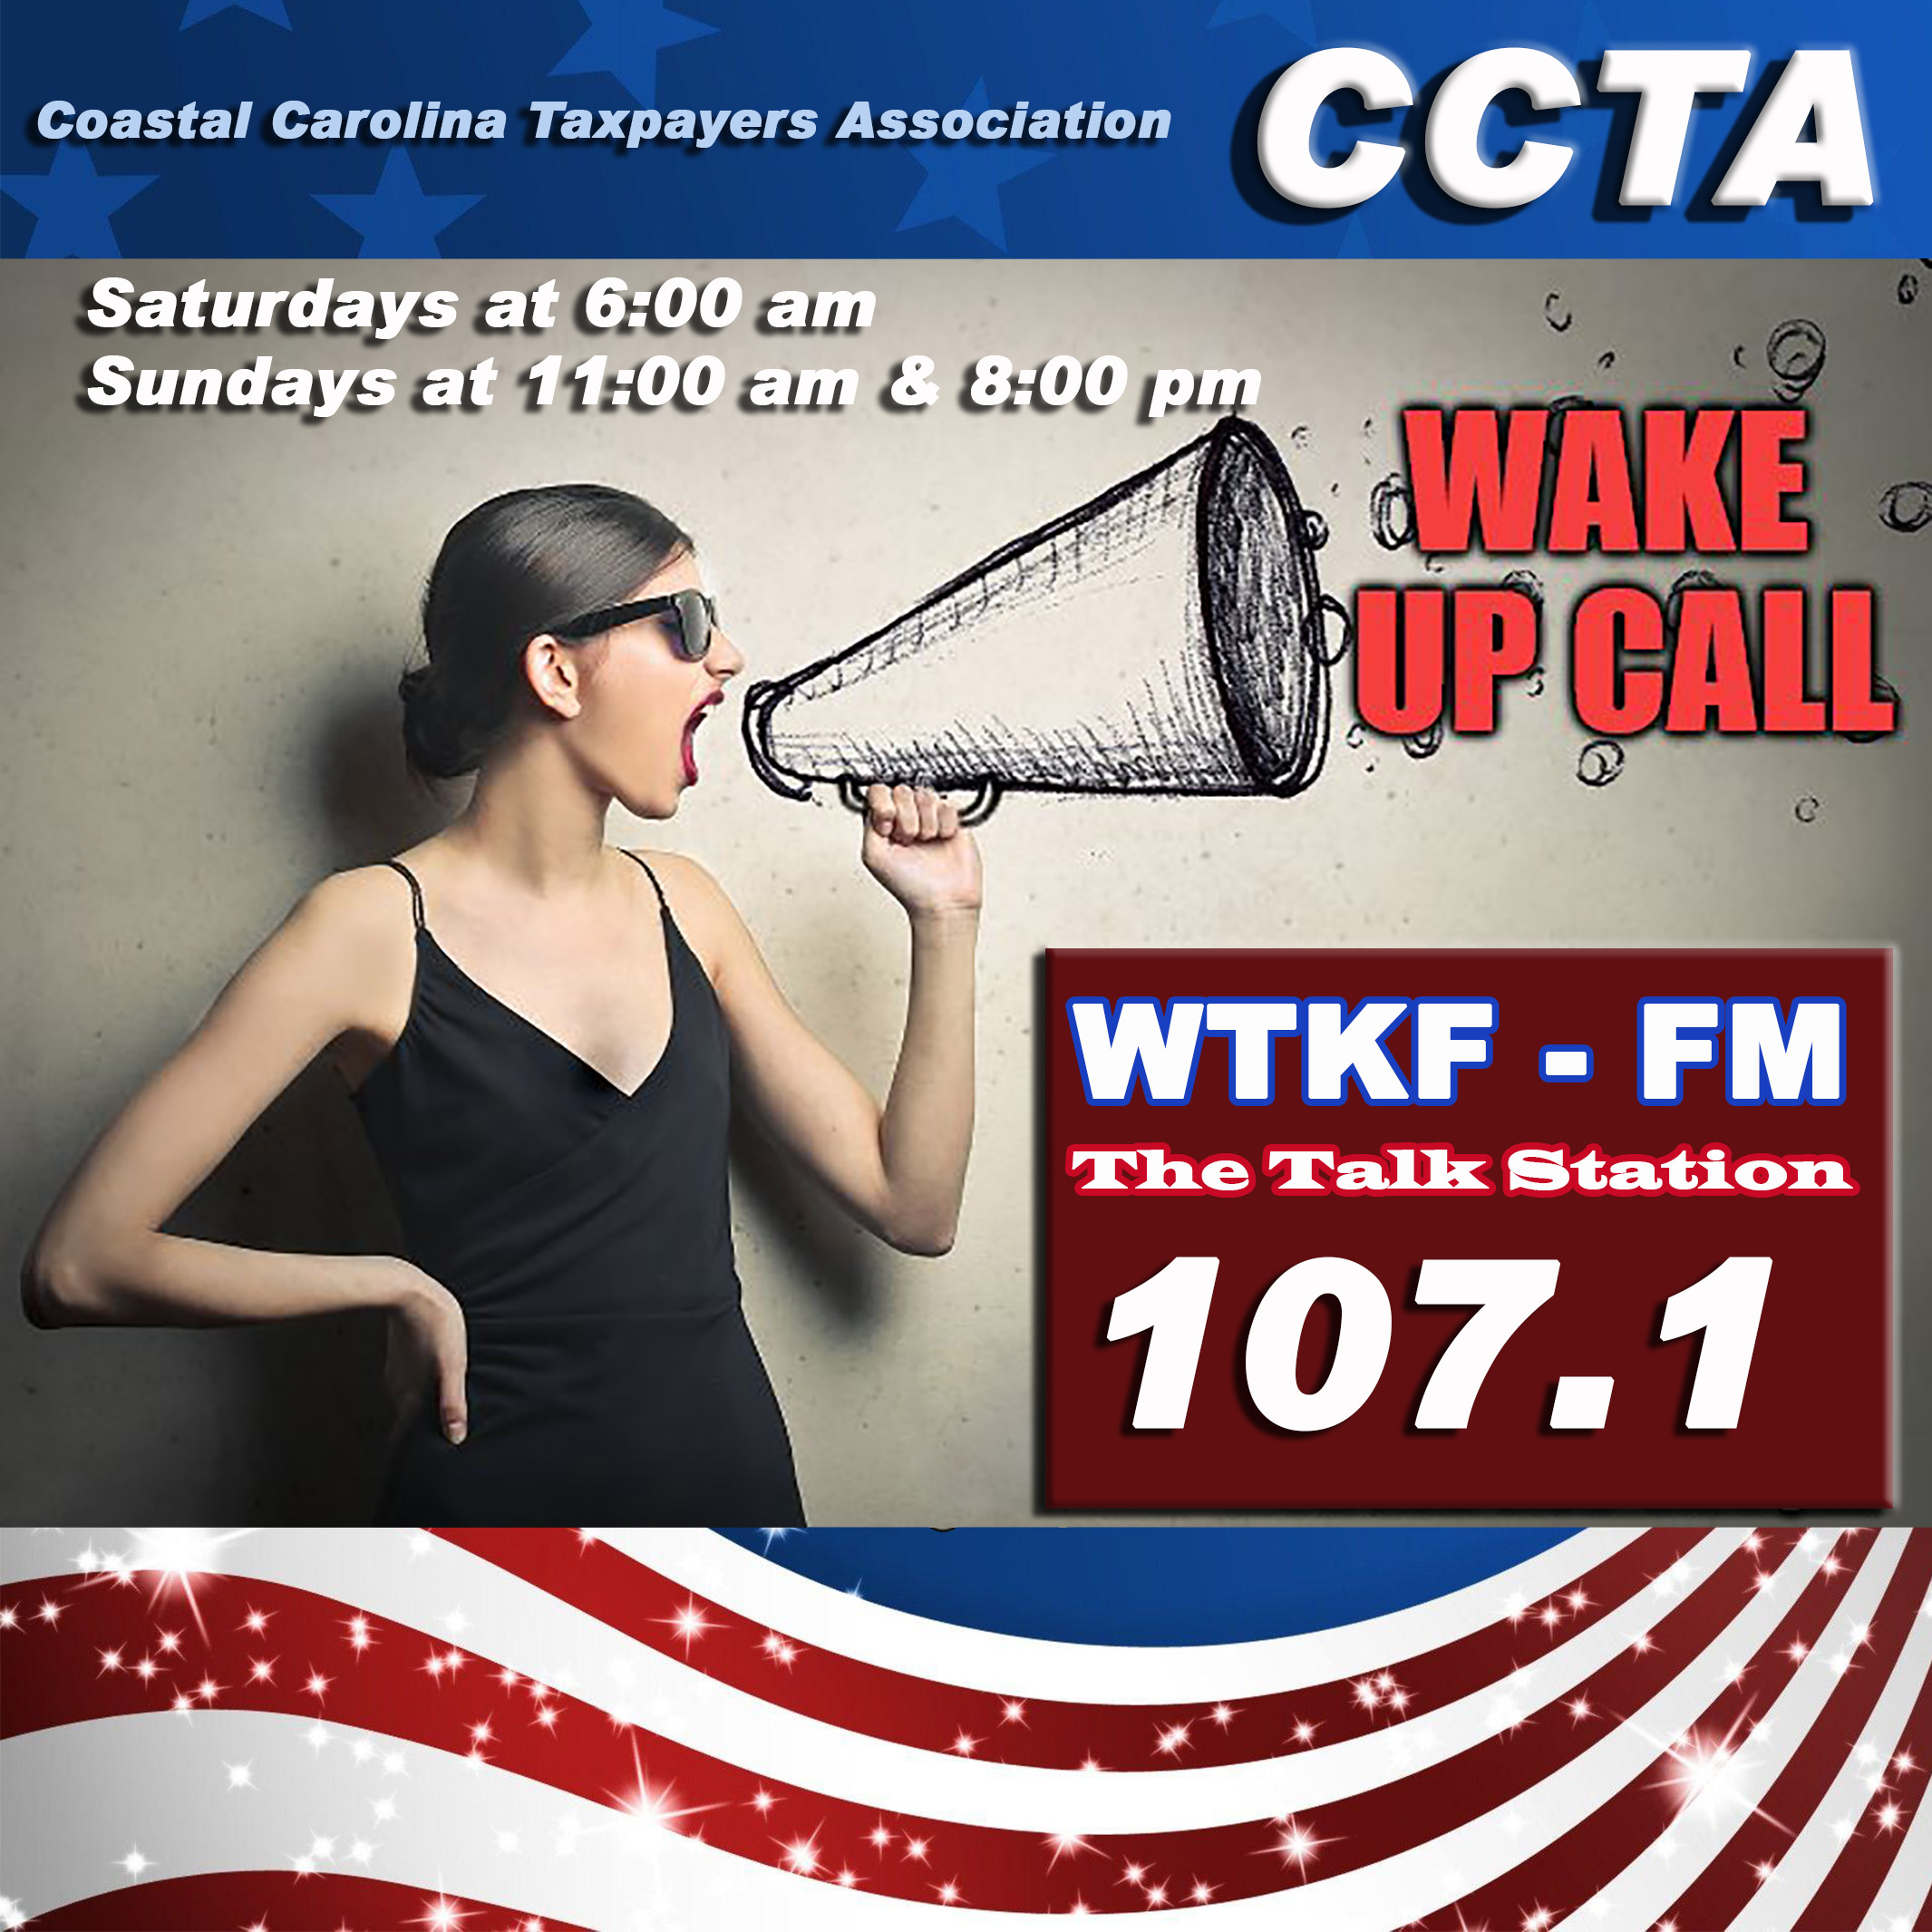 CCTA Wakeup Call